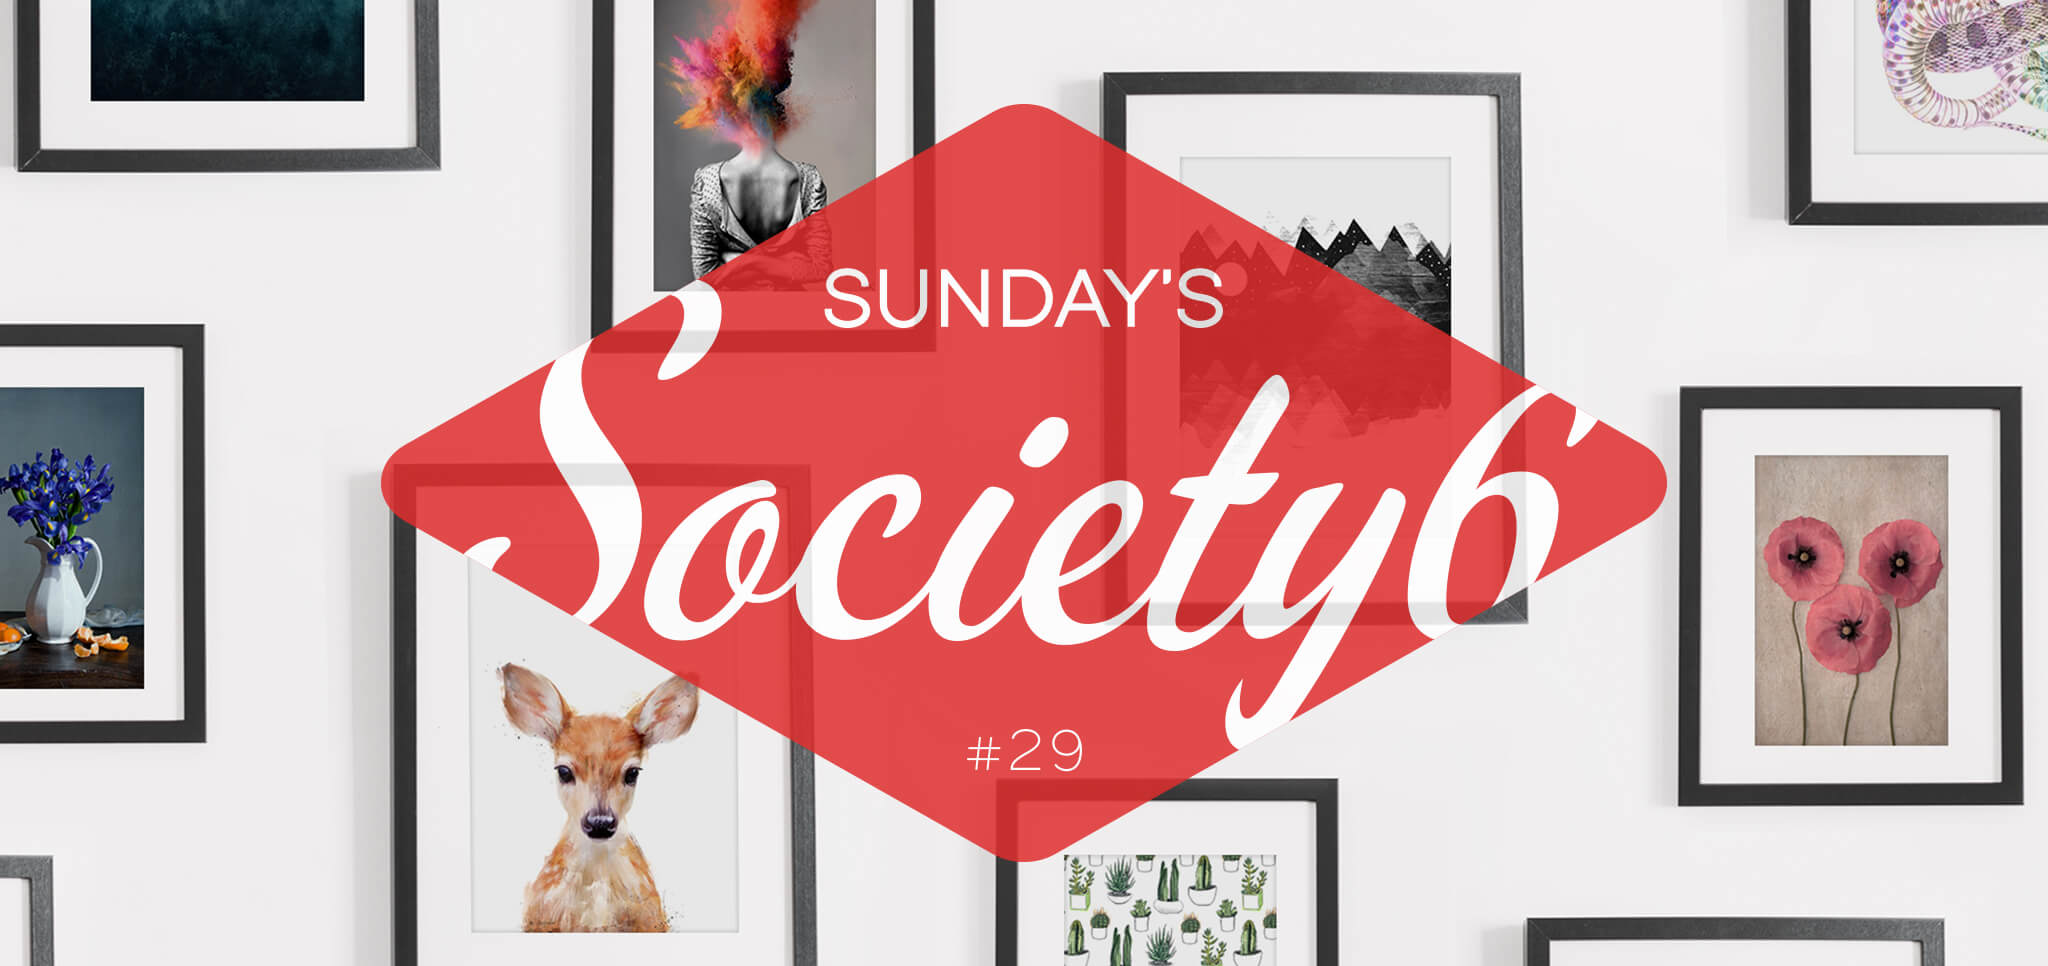 Sunday’s Society6 #29 | Little animals